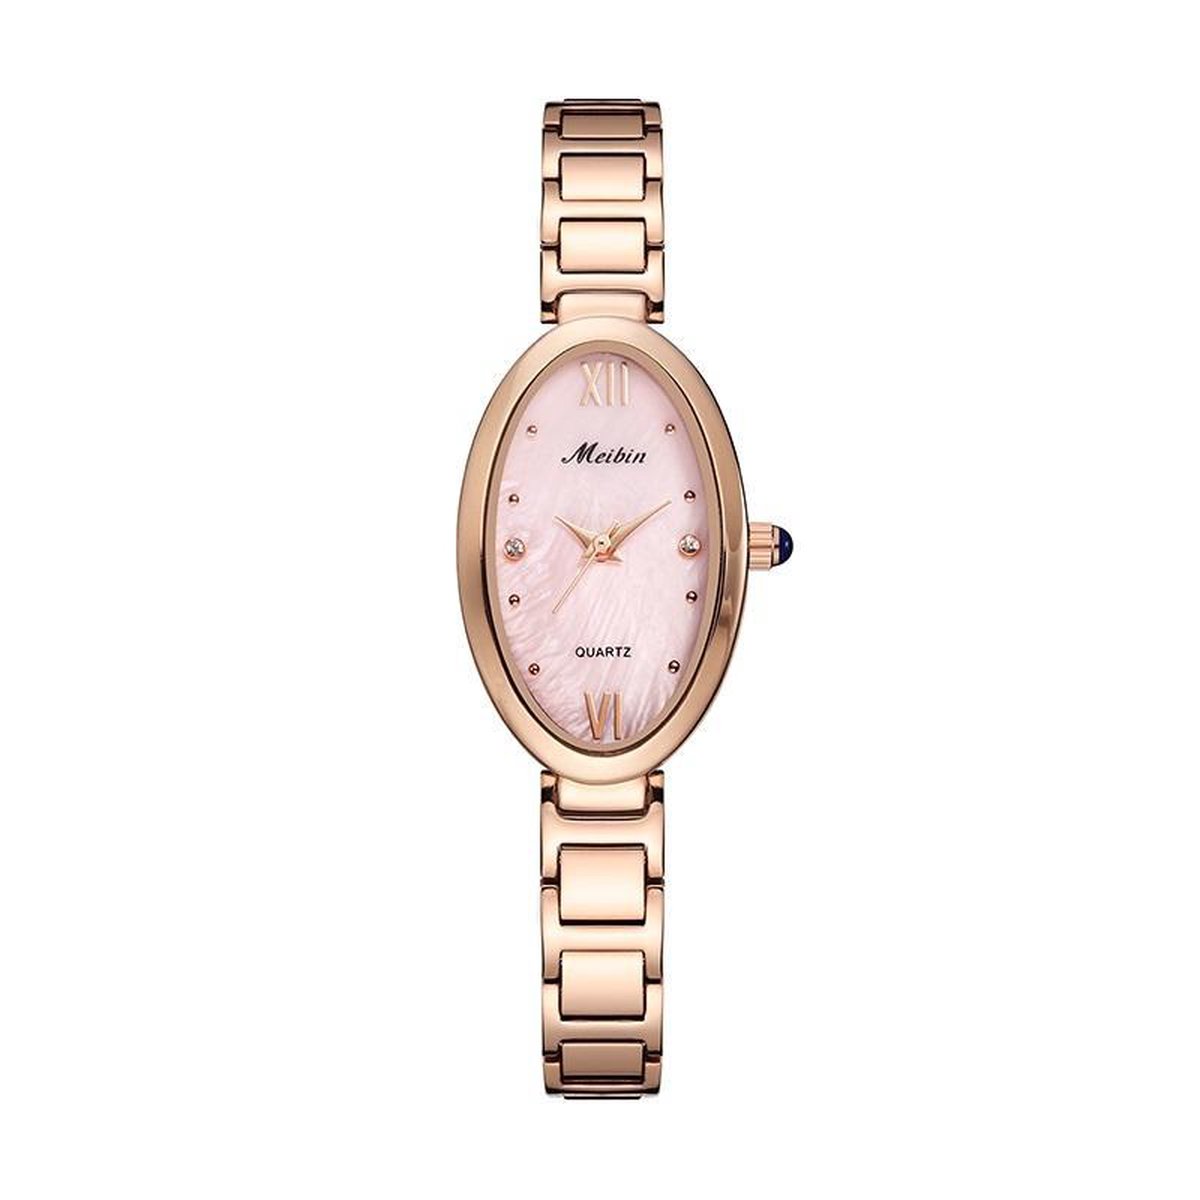 Longbo - Meibin - Dames Horloge - Rosé/Roze - Ovaal - 21.5*34mm (Productvideo)